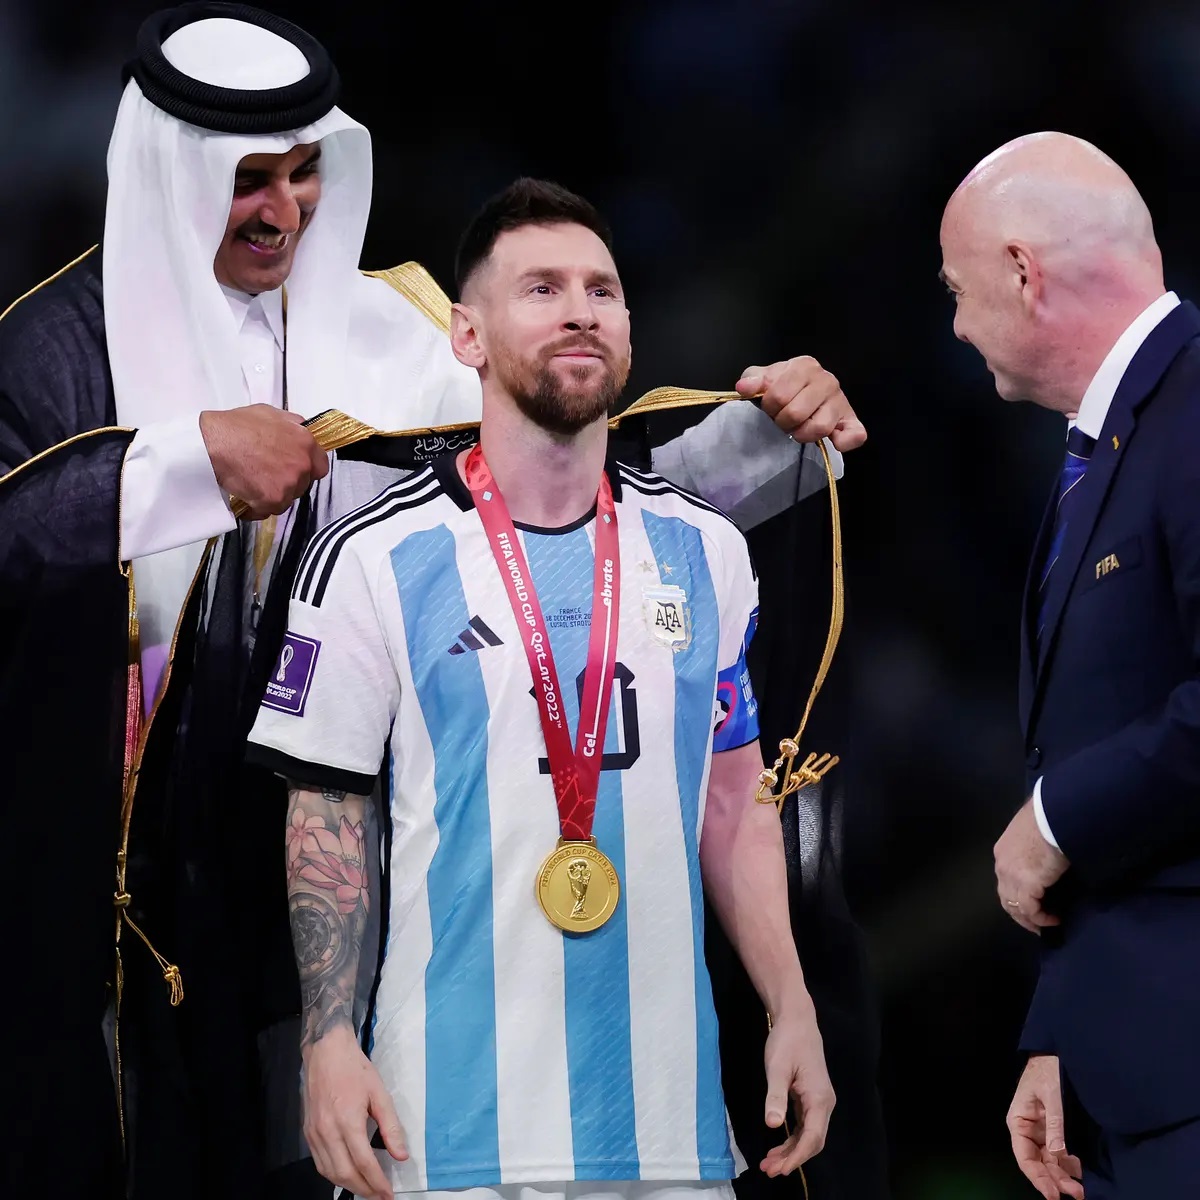 Xem Messi nâng cúp World Cup trong chiếc áo choàng đen đặc trưng của đội tuyển Argentina để trở thành một trong những cầu thủ xuất sắc nhất thế giới. Đó là một khoảnh khắc đáng nhớ cho cả Messi và người dân Argentina.